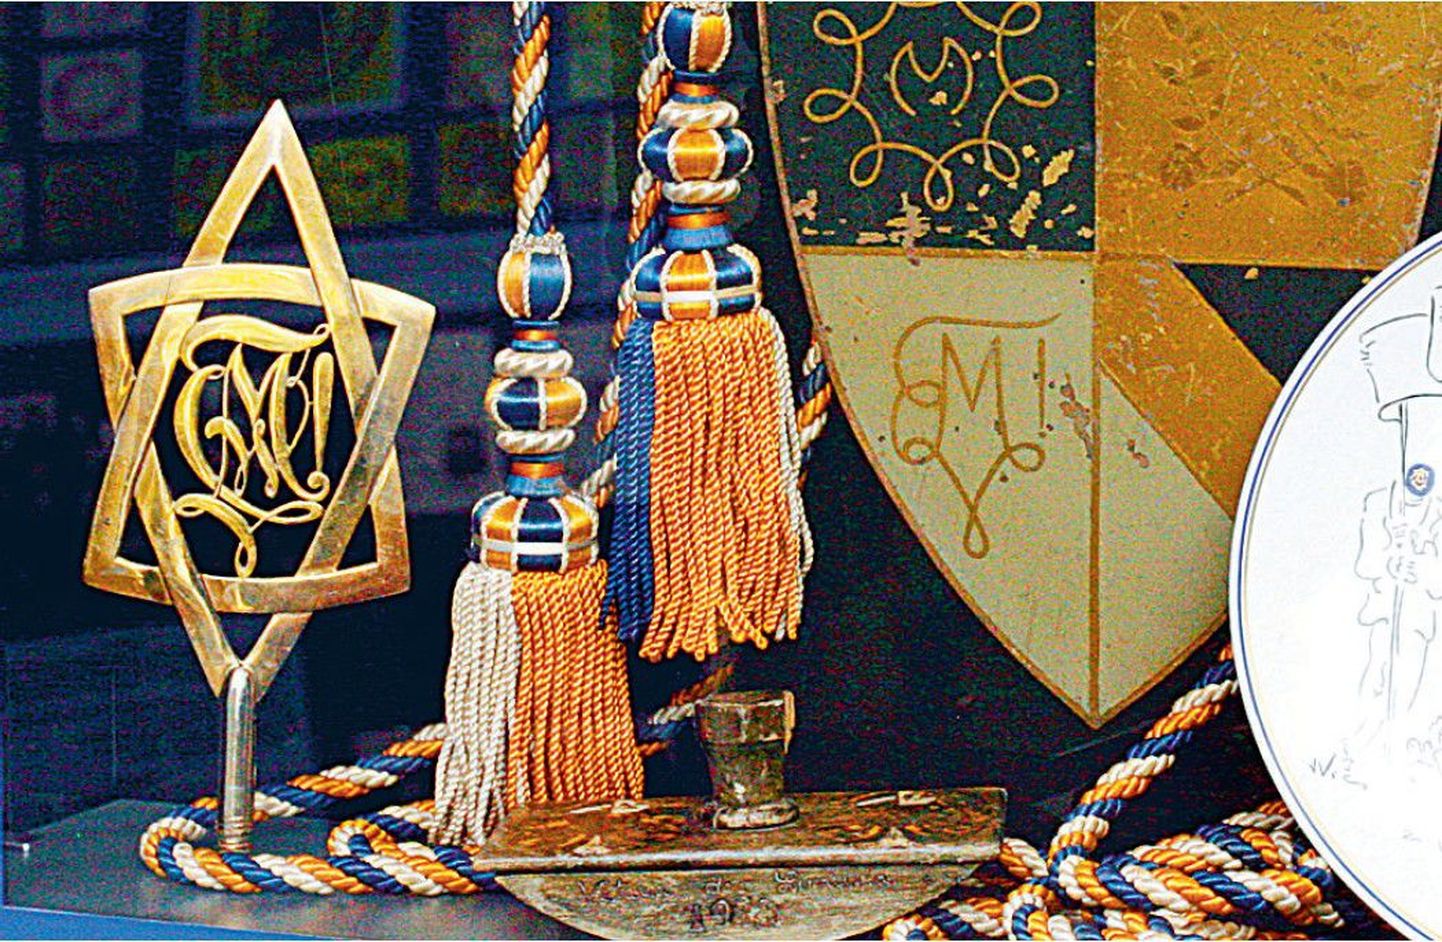 Noorsooühingu korporatsioonidele kuulunud esemed vastavatud juudi muuseumi ekspositsioonis.